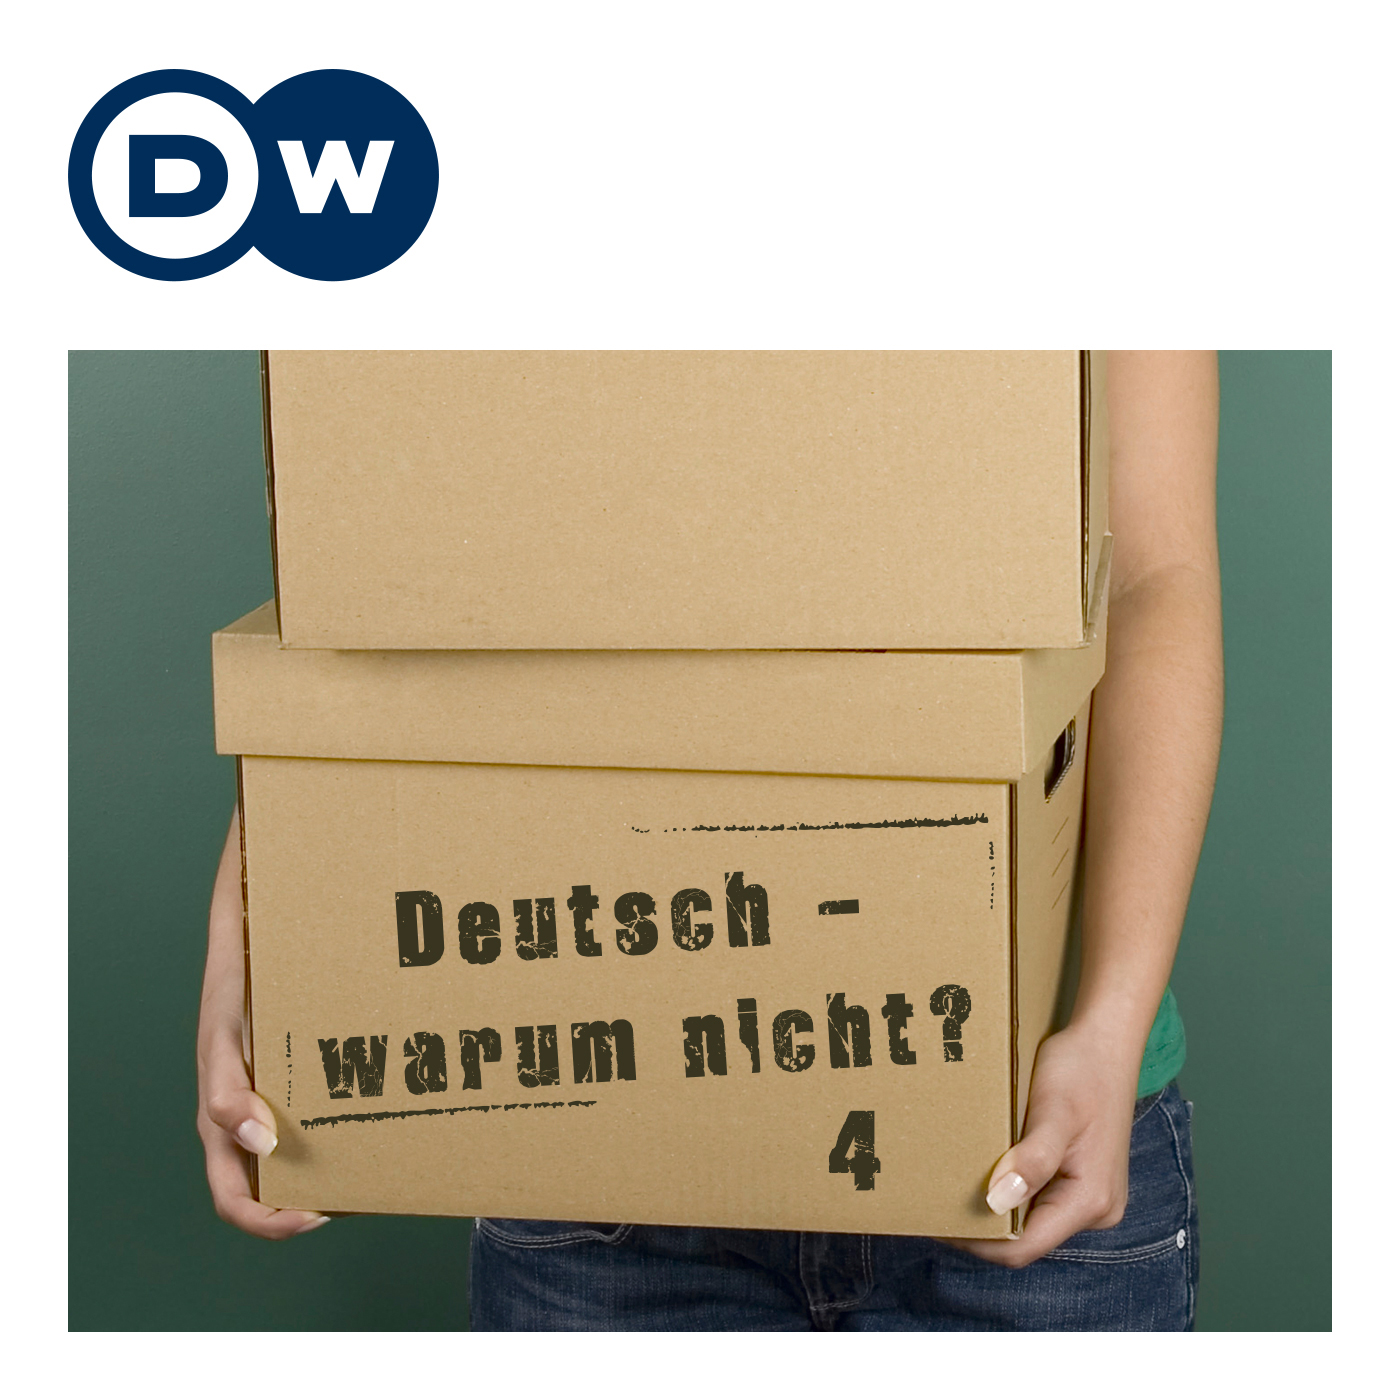 Deutsch - warum nicht? 4 | | Deutsche Welle